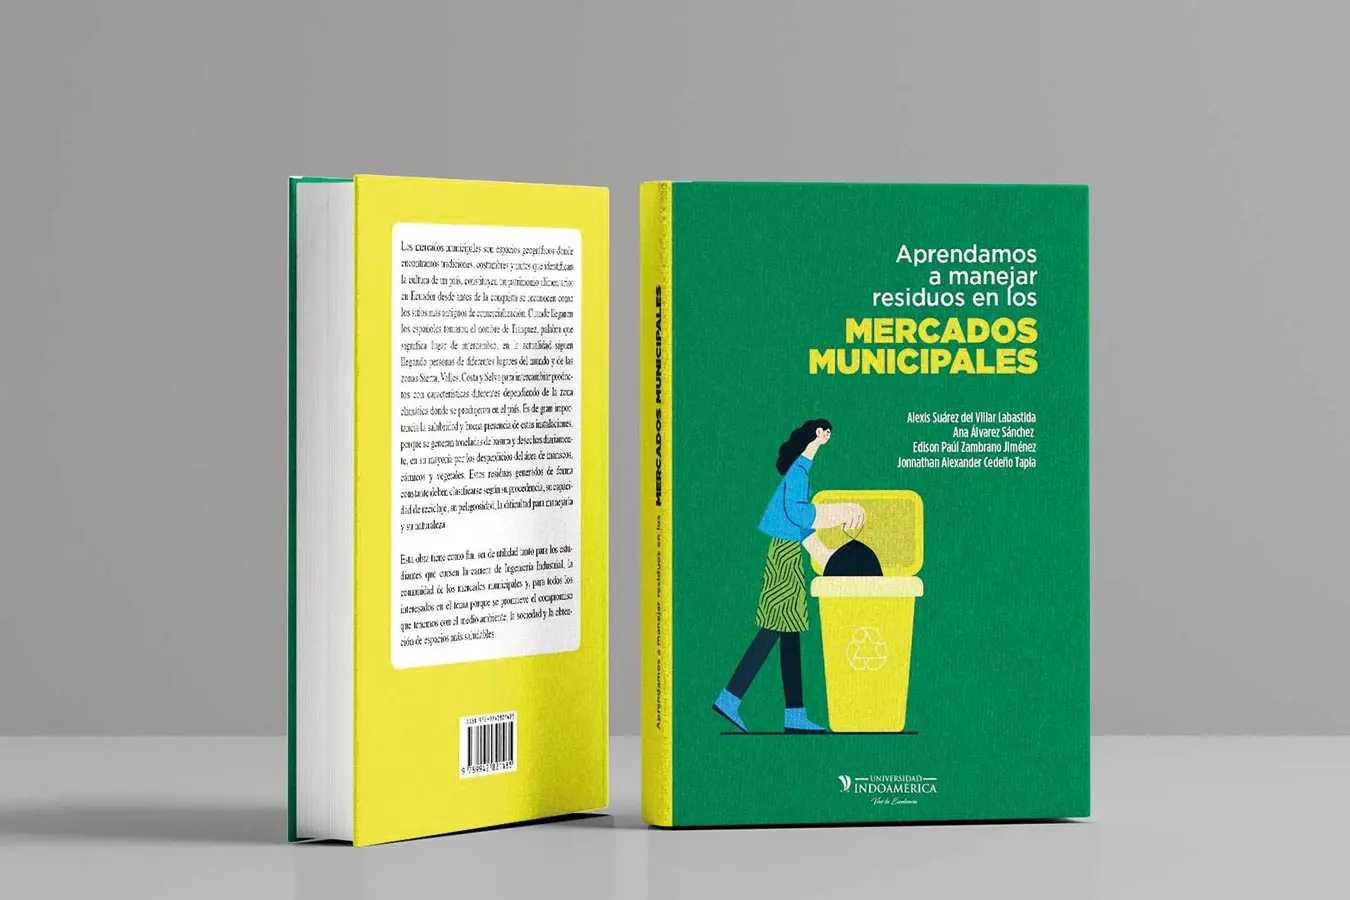 Nuevo libro sobre el manejo de residuos en los mercados de Quito